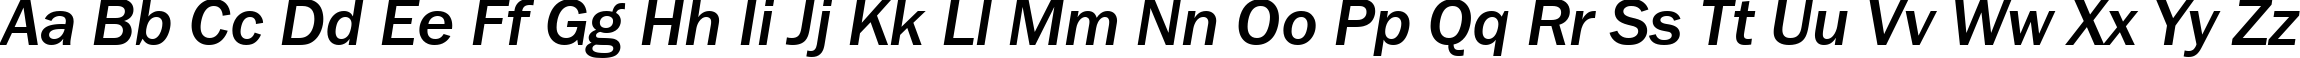 Пример написания английского алфавита шрифтом FranklinGothMediumCTT Italic